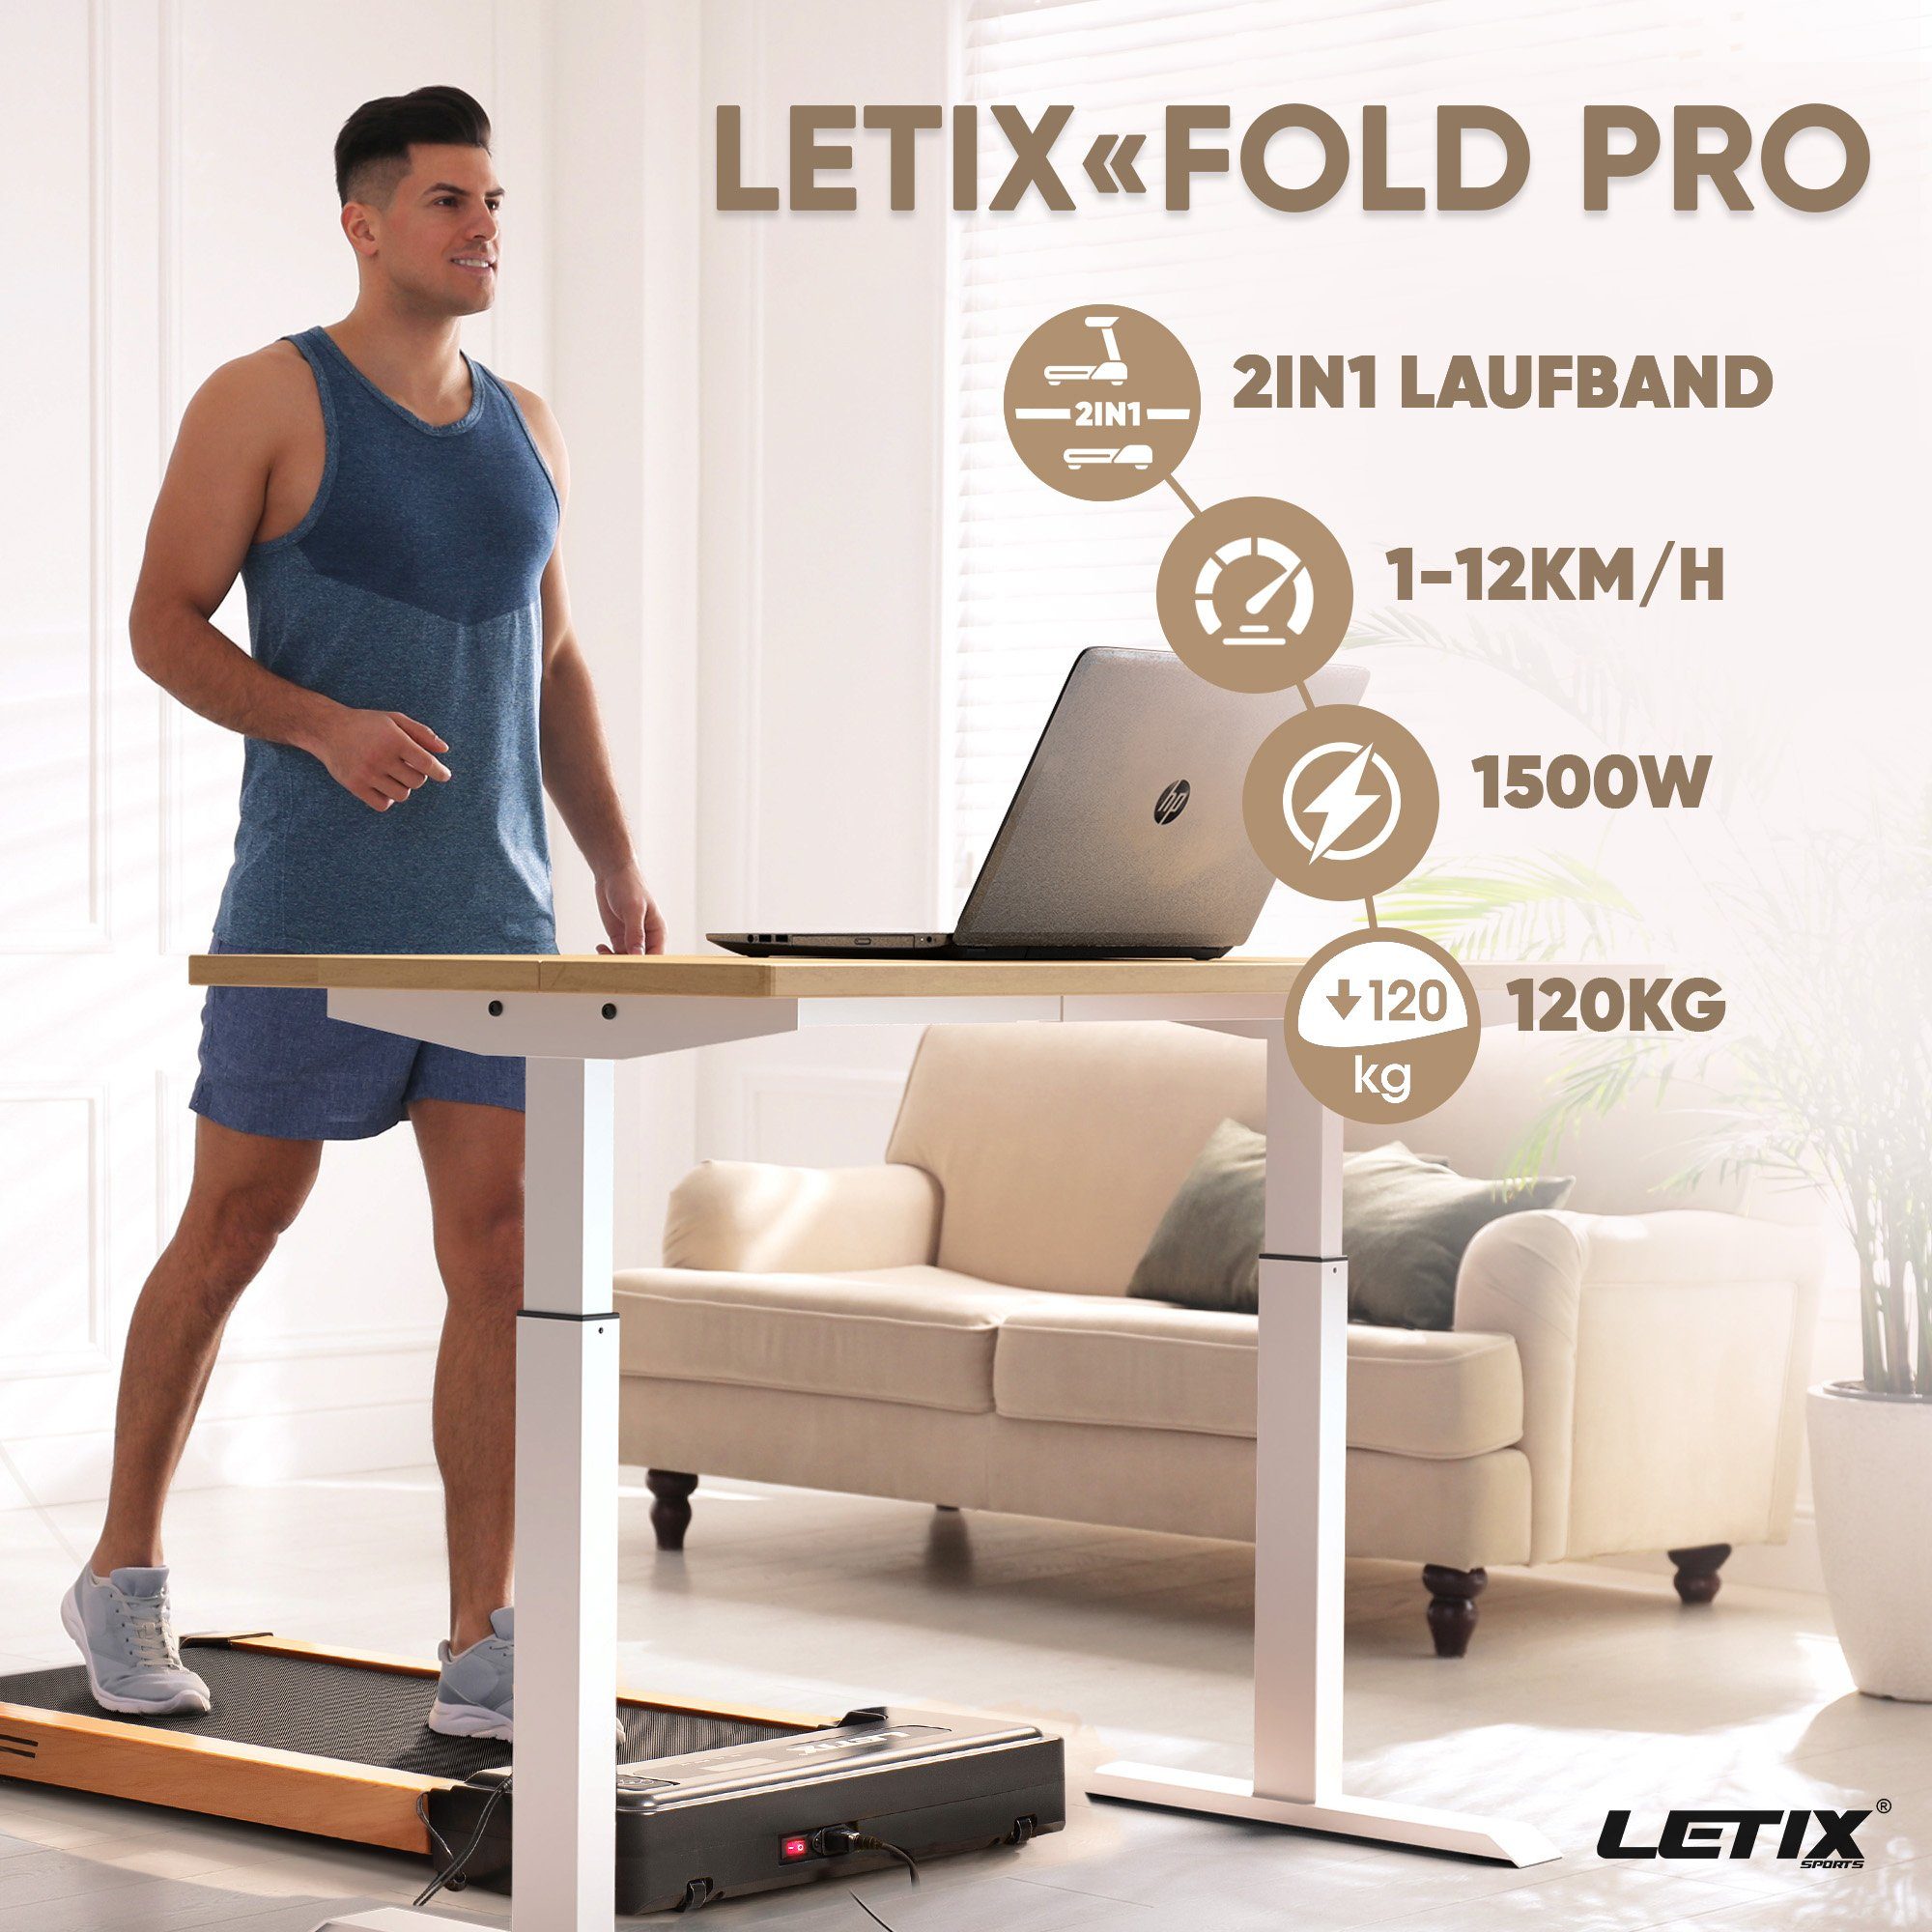 Letix Sports Laufband FoldPro 2in1 Fitnessgerät, Hause Bluetooth Funktion, und & motorisiertes zu LCD-Display, für Büro, Heimtrainer APP weiß mit